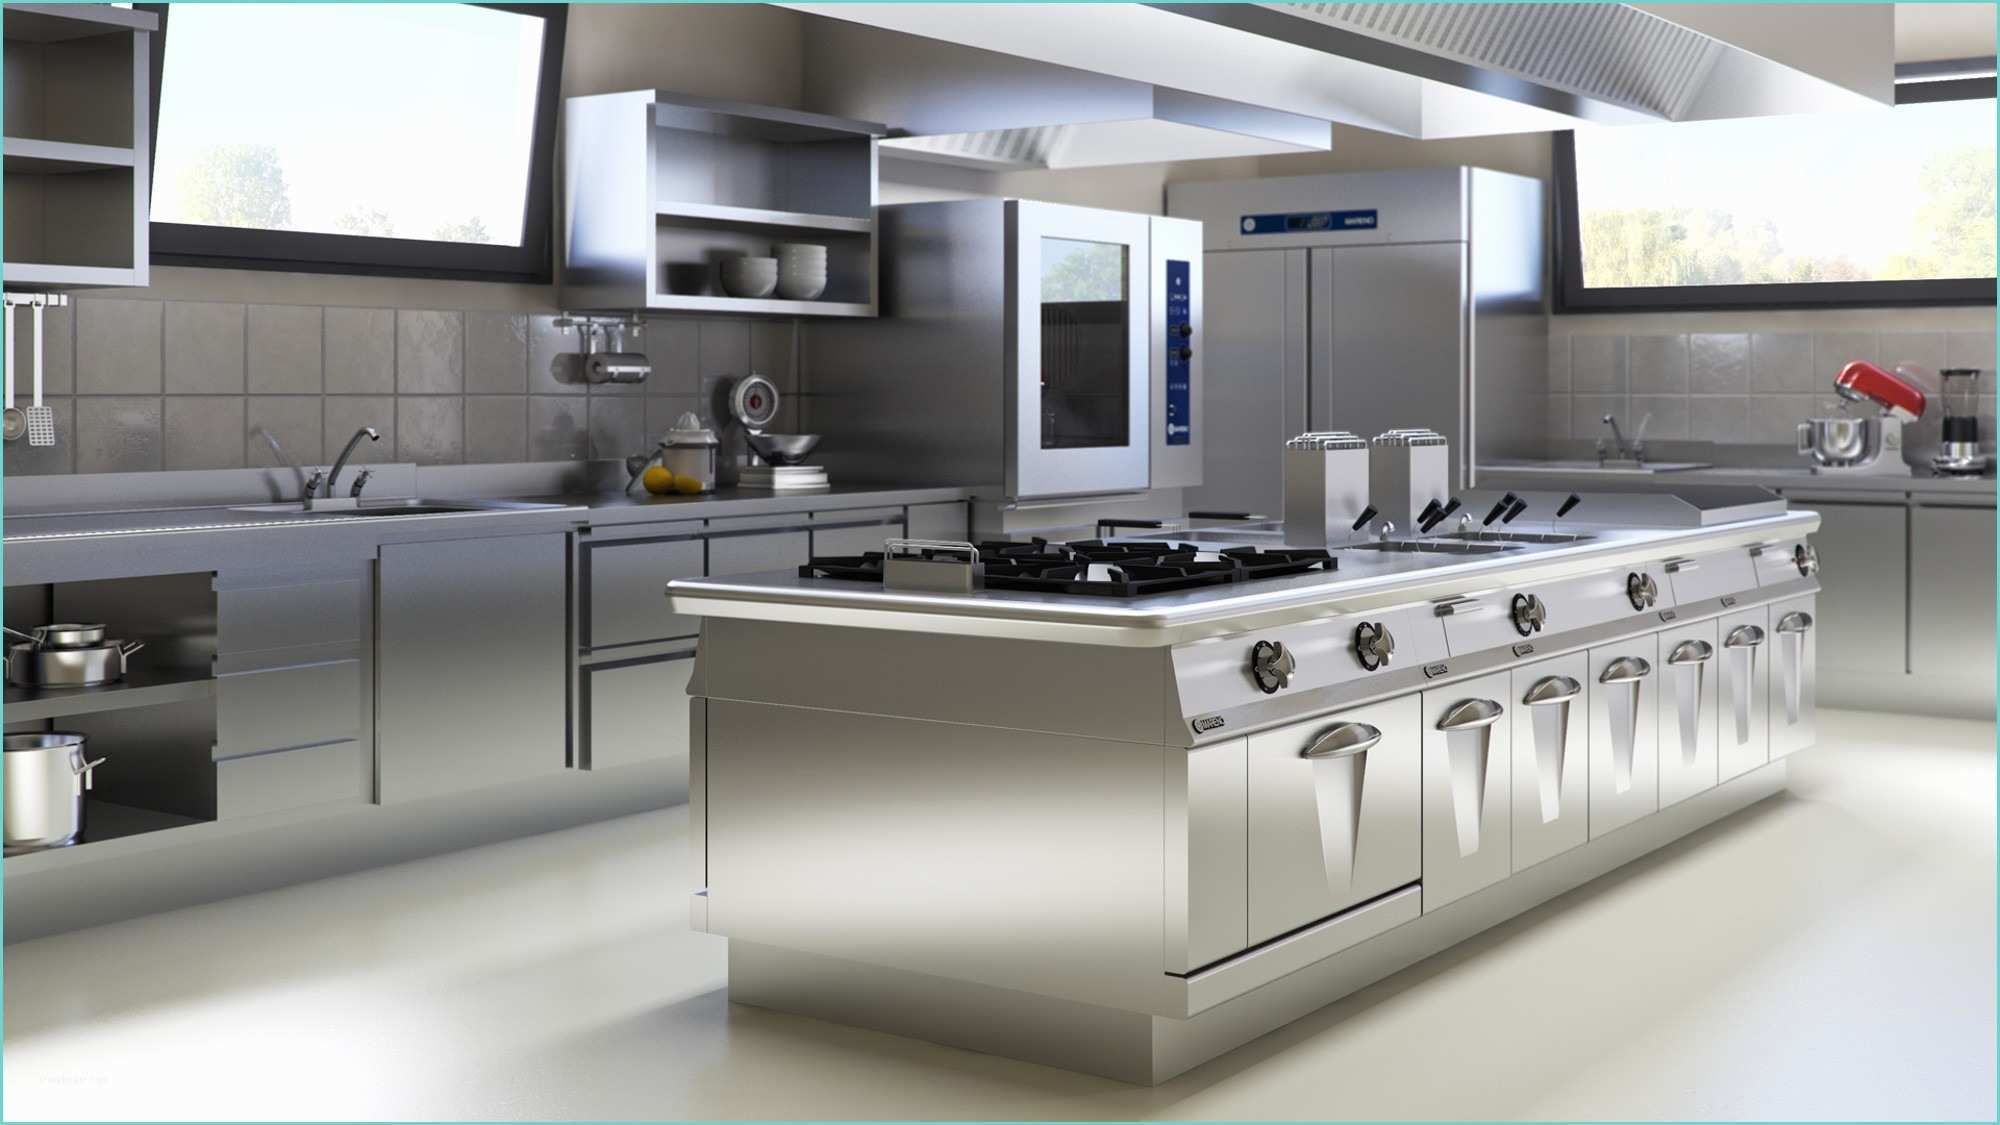 Cucina Ristorante Dwg Mobili Per Cucina Ristorante Design Casa Creativa E